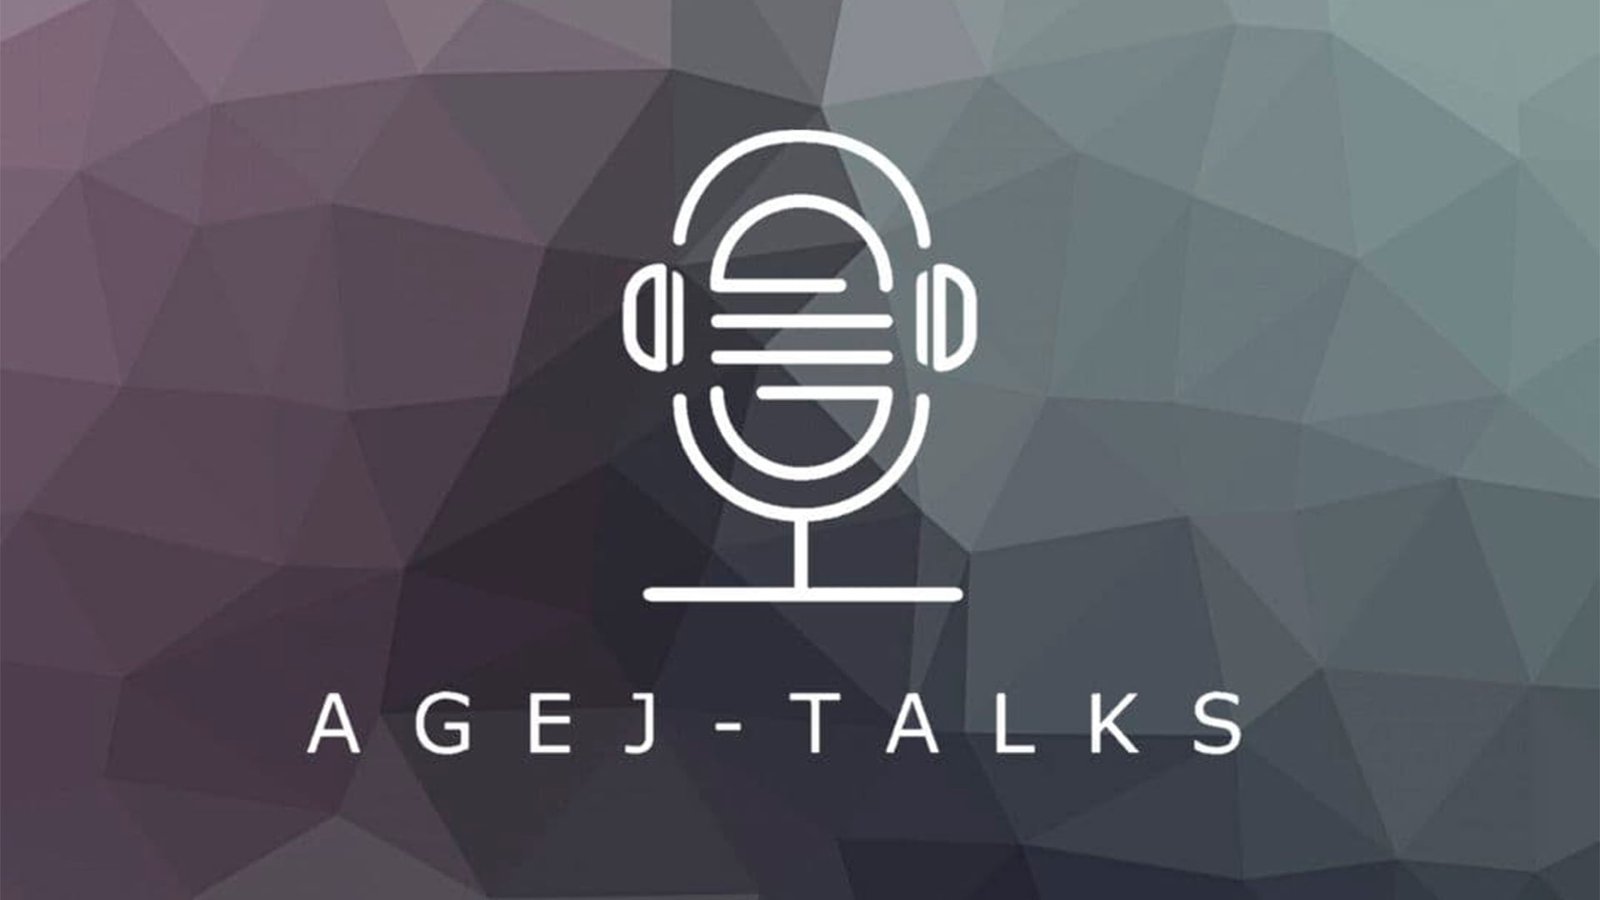 logo do podcast agej-talks criado pela agej - associação guimarães de estudos jurídicos